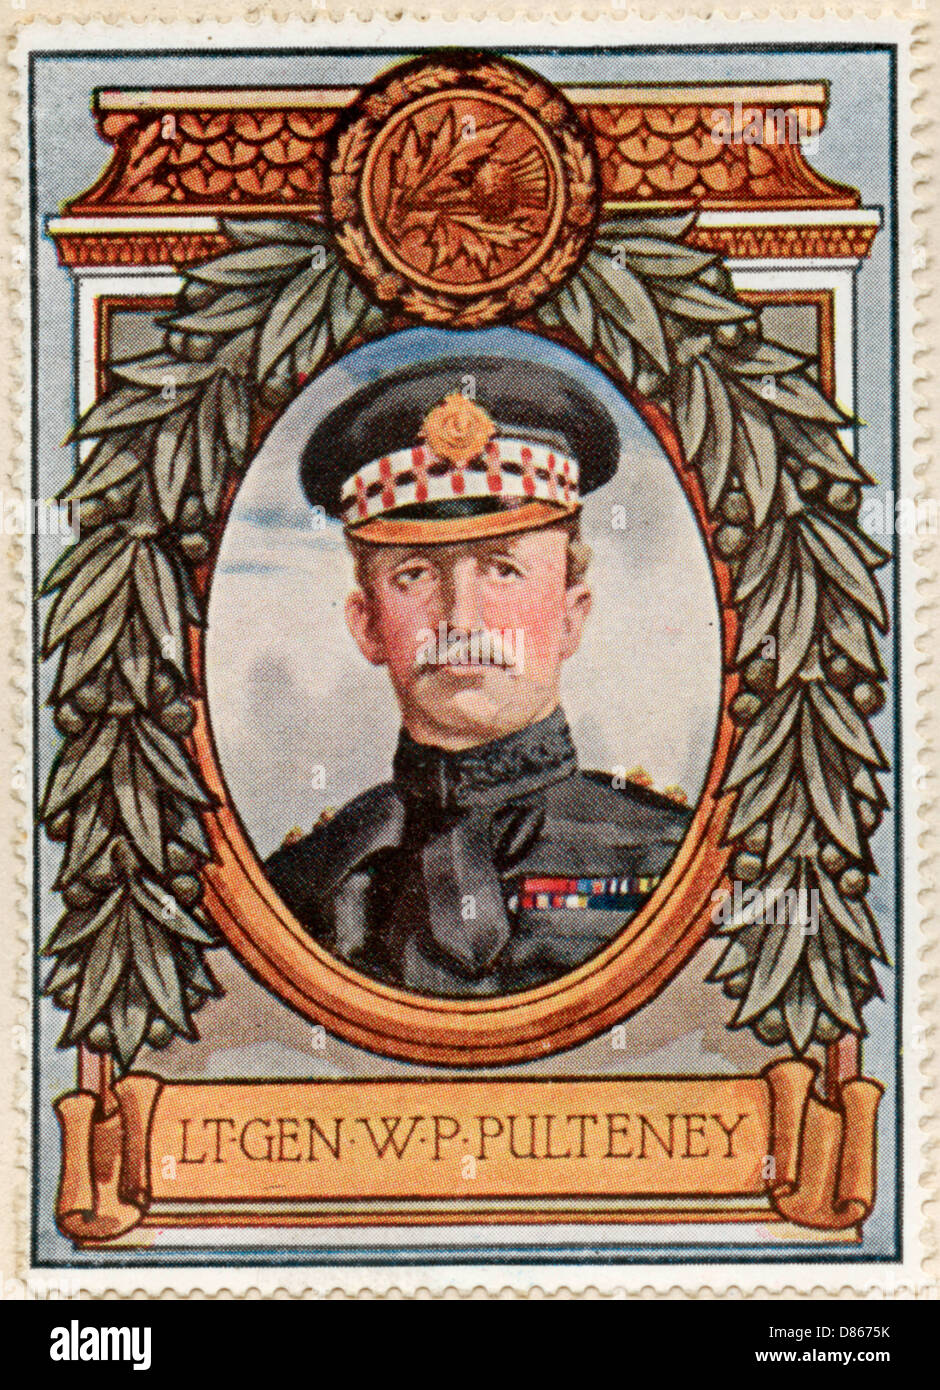 Sir William P. Pulteney / Stamp Foto Stock